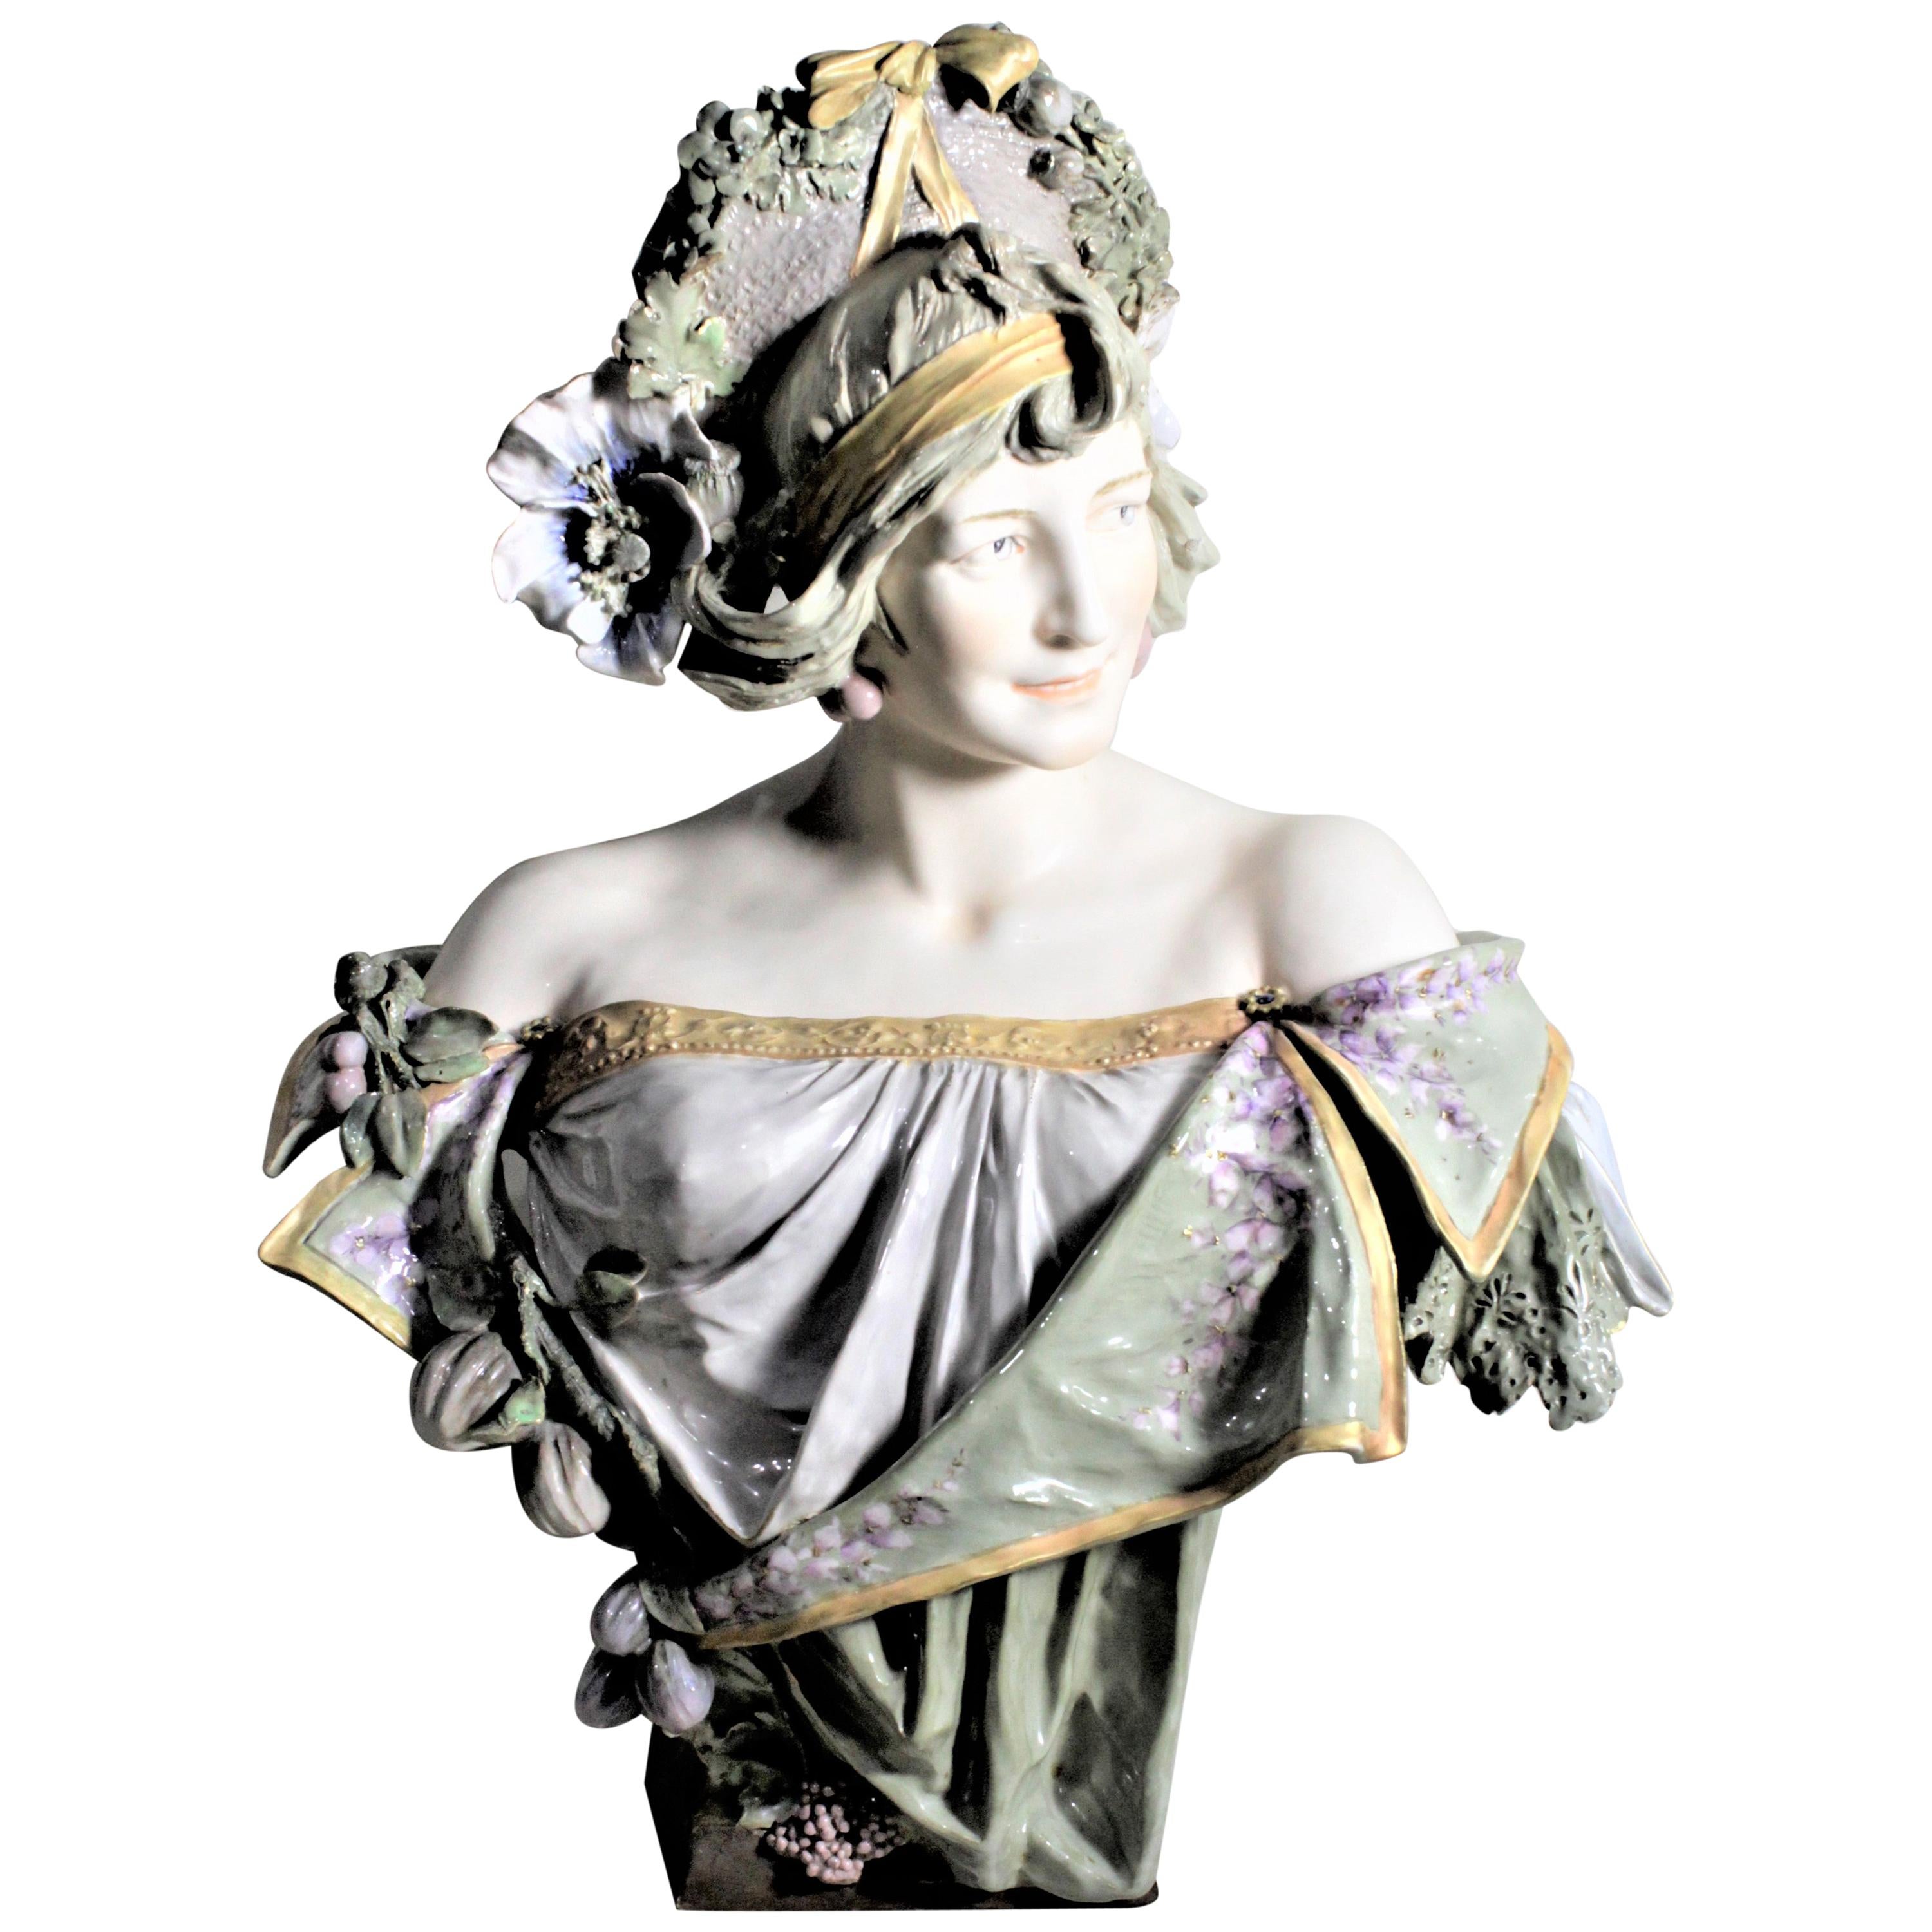 Große antike weibliche Skulptur oder Büste aus österreichischem Jugendstil-Porzellan